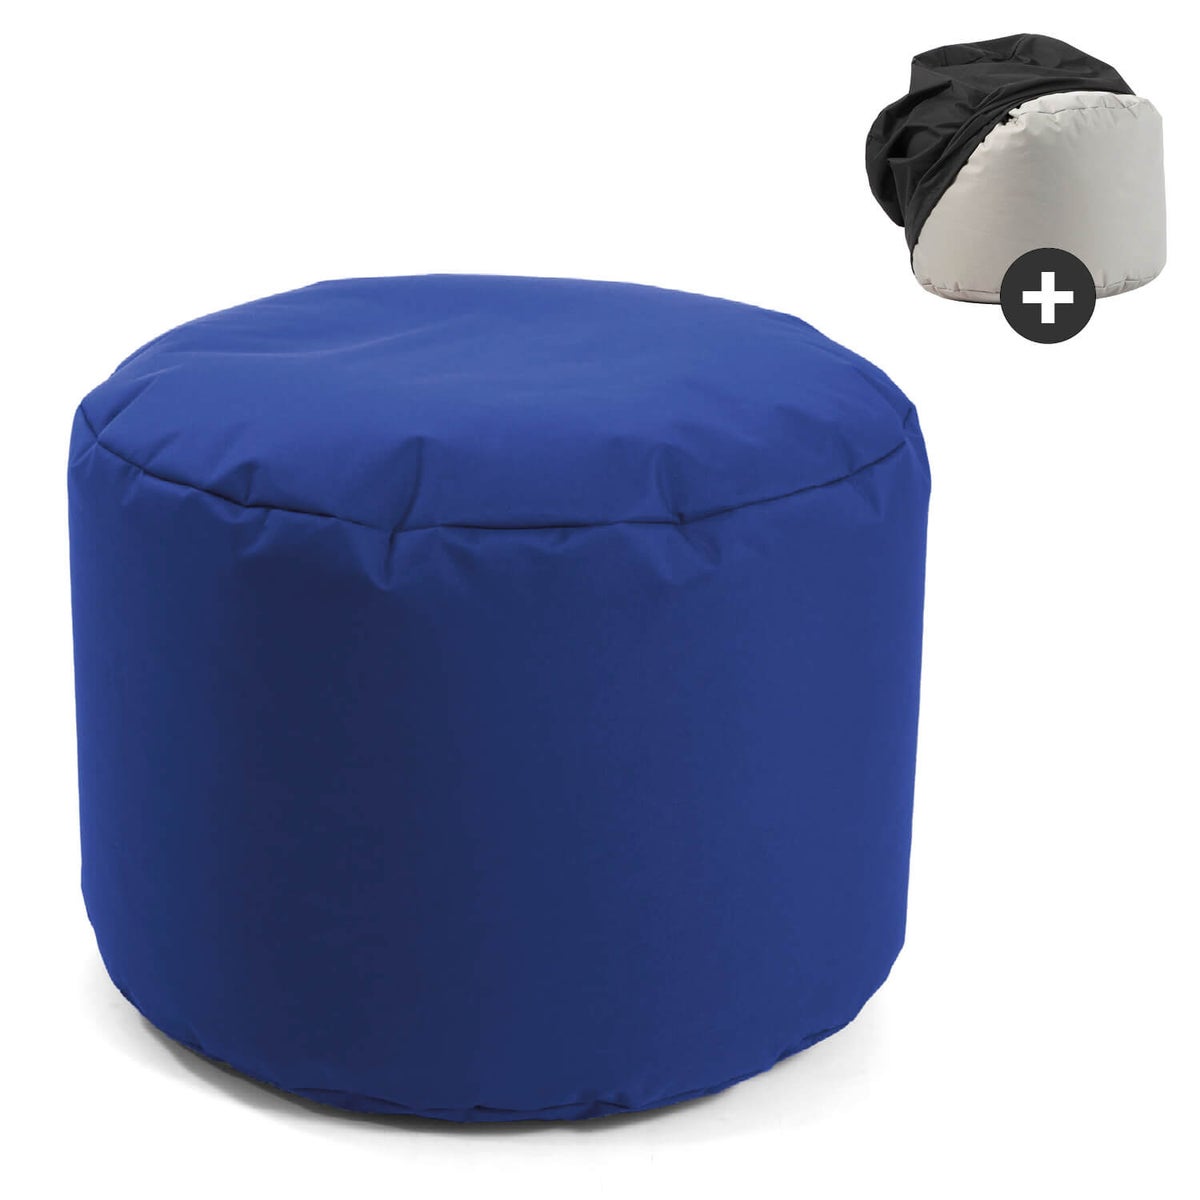 Outdoor Pouf o. Hocker 60x40cm in Blau mit schwarzer Schutzhülle 'Der Ruhepouf', Sitzhocker, Fußhocker o. Sitzkissen rund mit EPS-Perlen Füllung und Cover, wasserabweisender Schutz durch Hülle